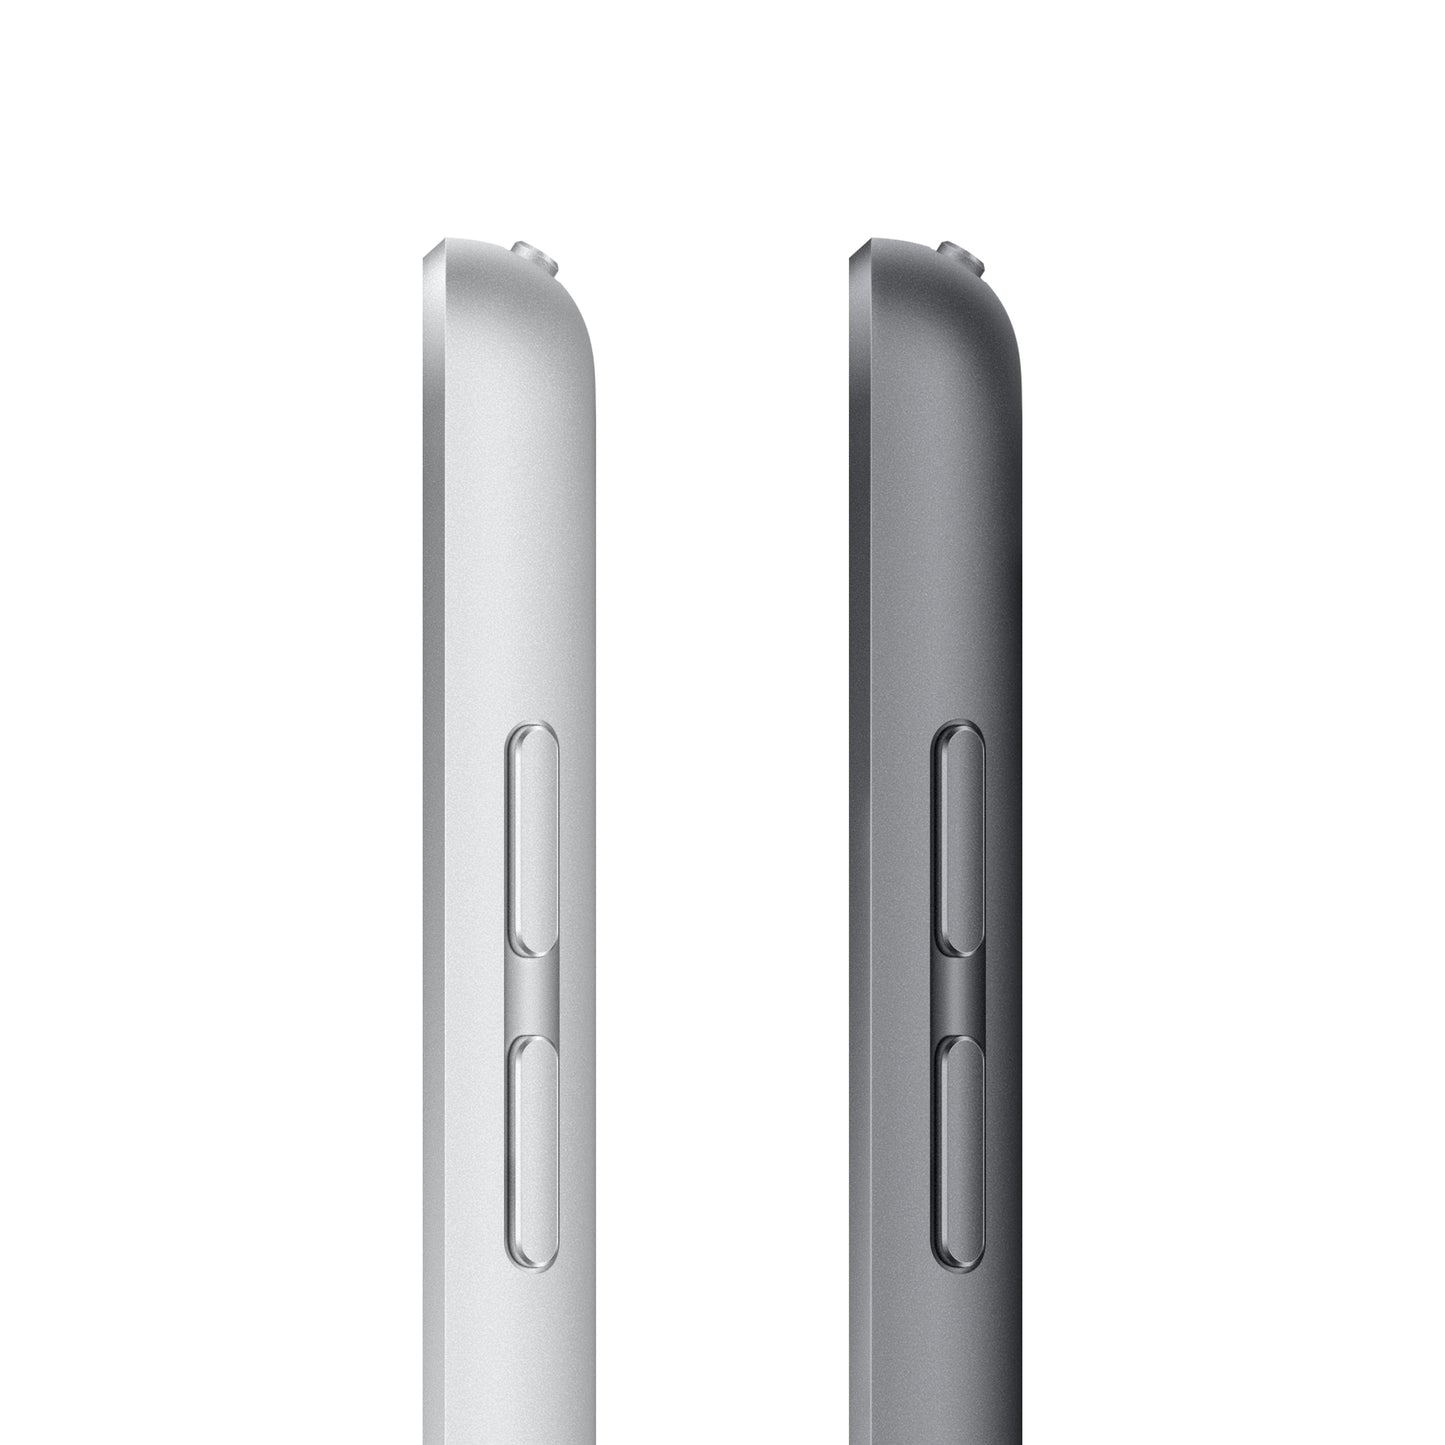 2021 10.2-inch iPad Wi-Fi + Cellular 256GB - Space Grey (9th generation)